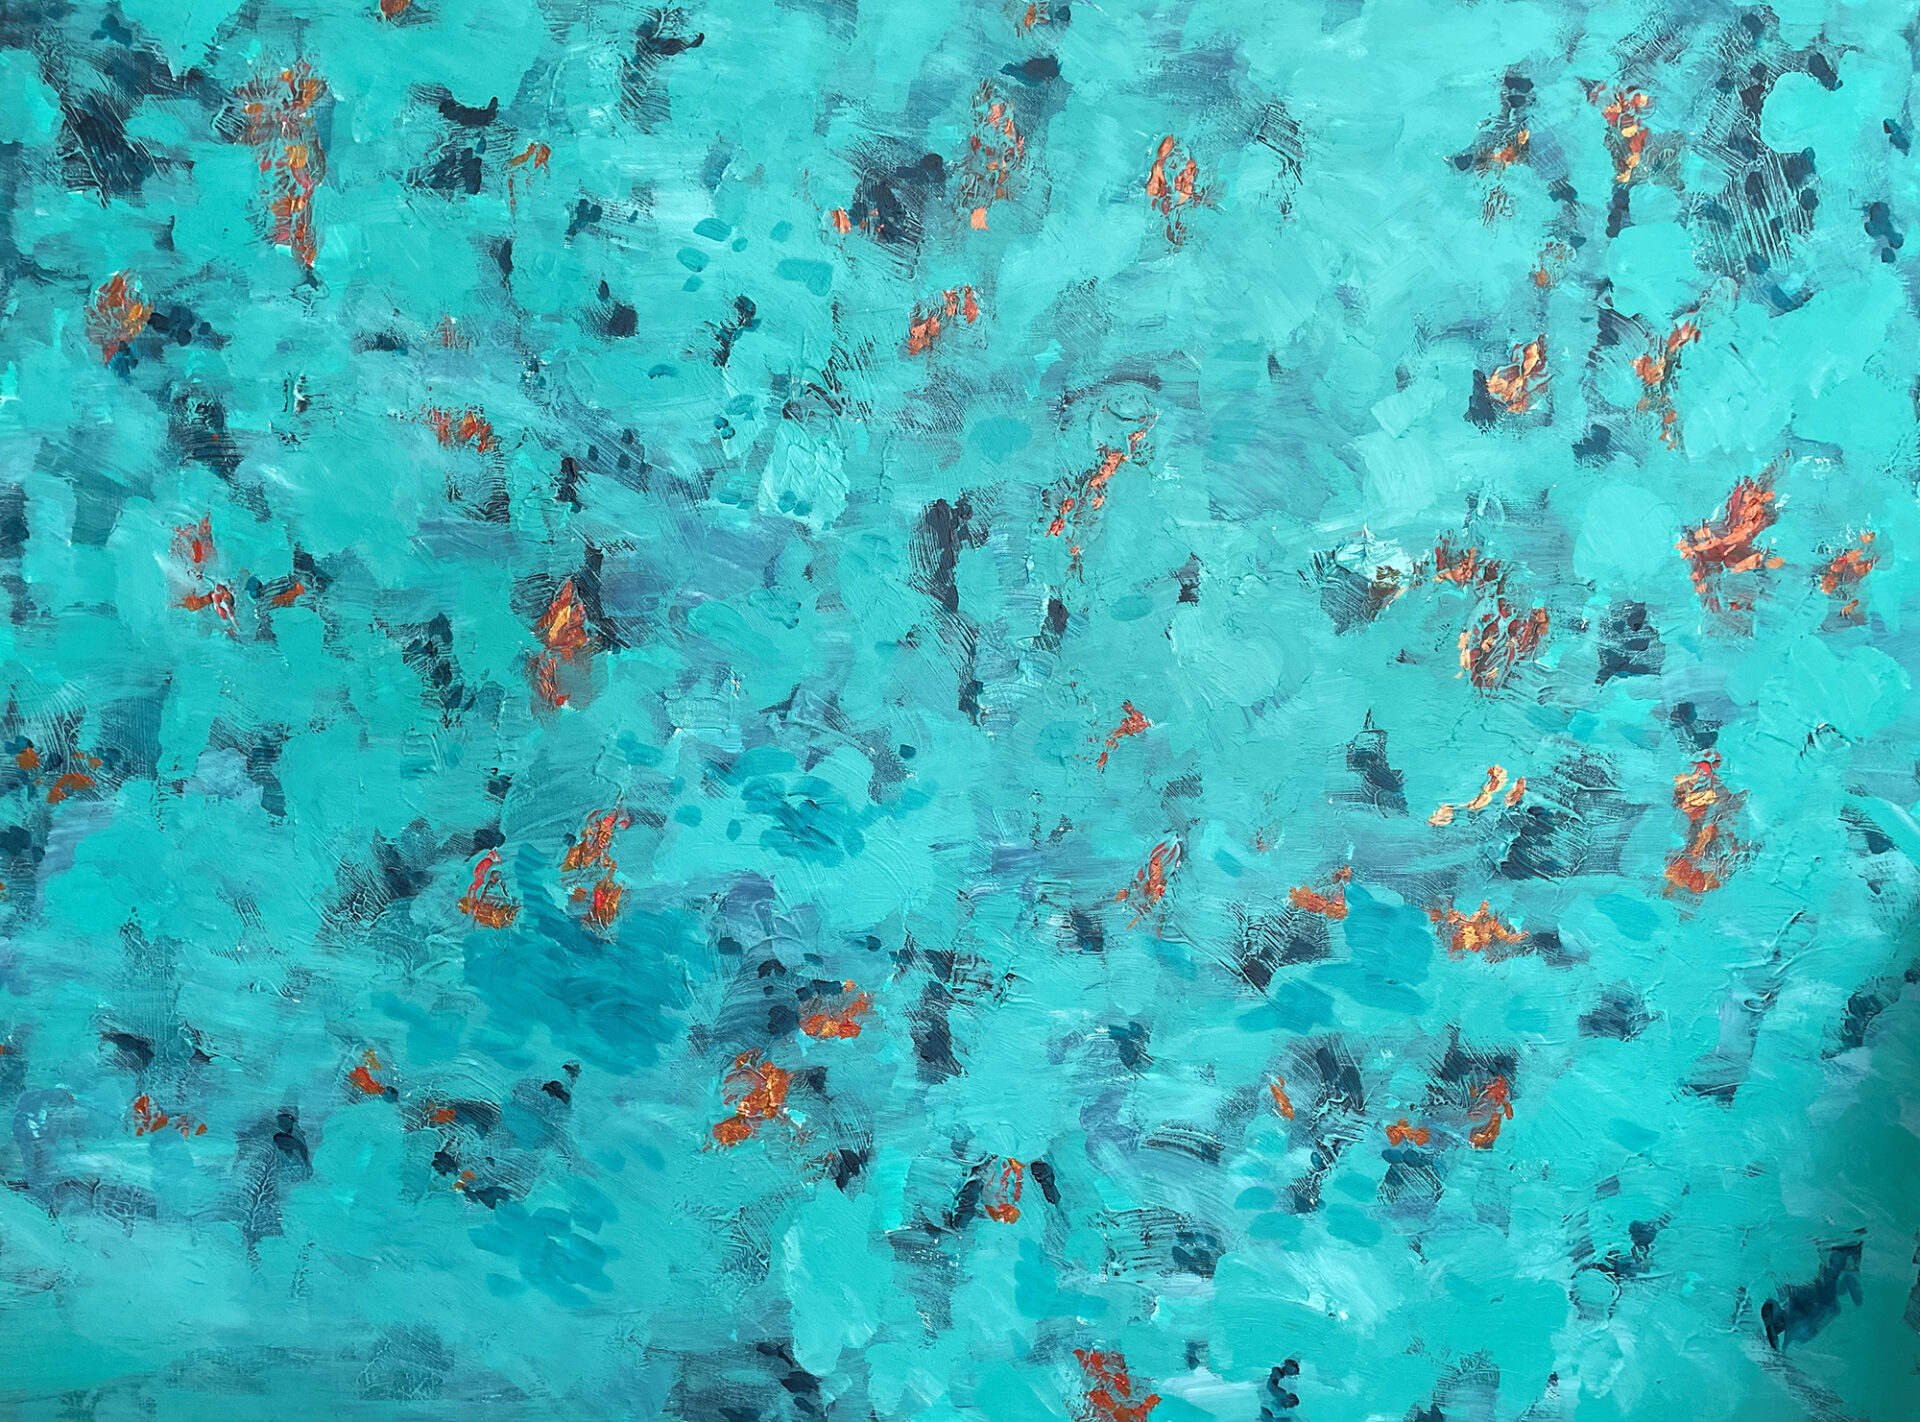 Pacific Painting 2 | GALERIA AZUR